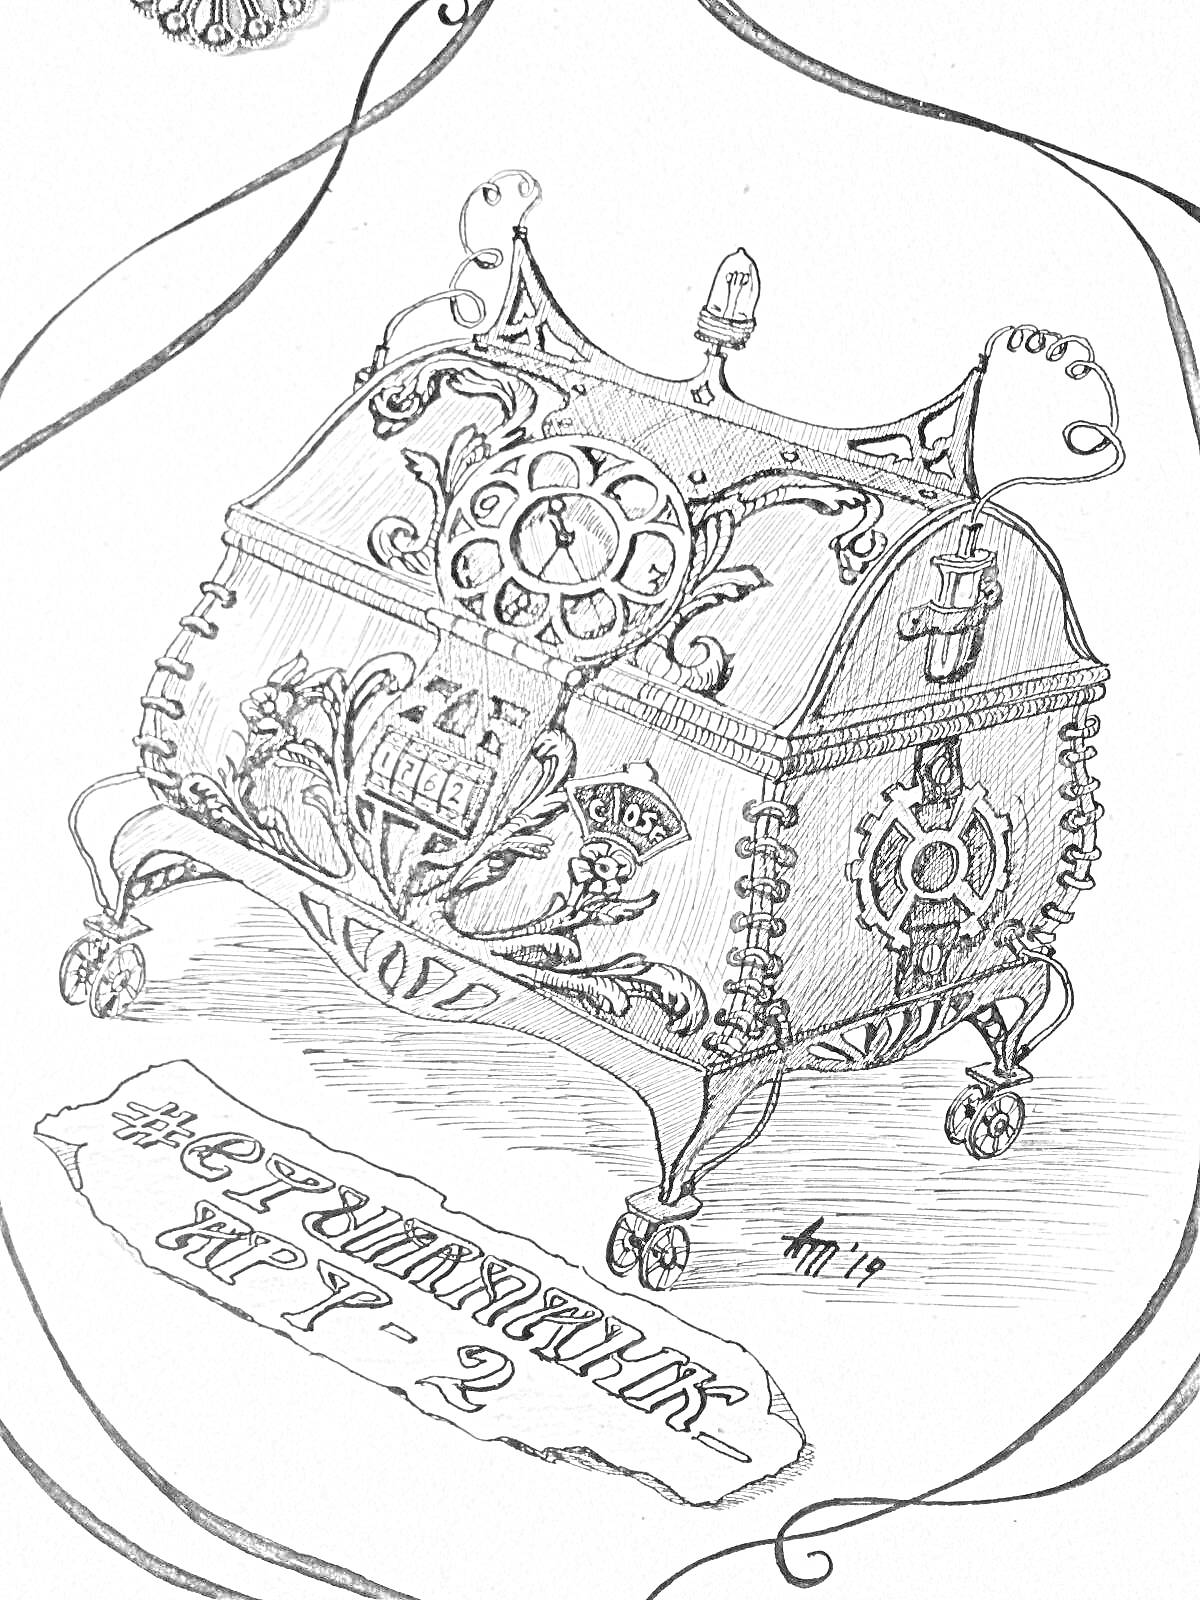 Раскраска Музыкальная шкатулка с рисунками и надписями, украшенная различными узорами